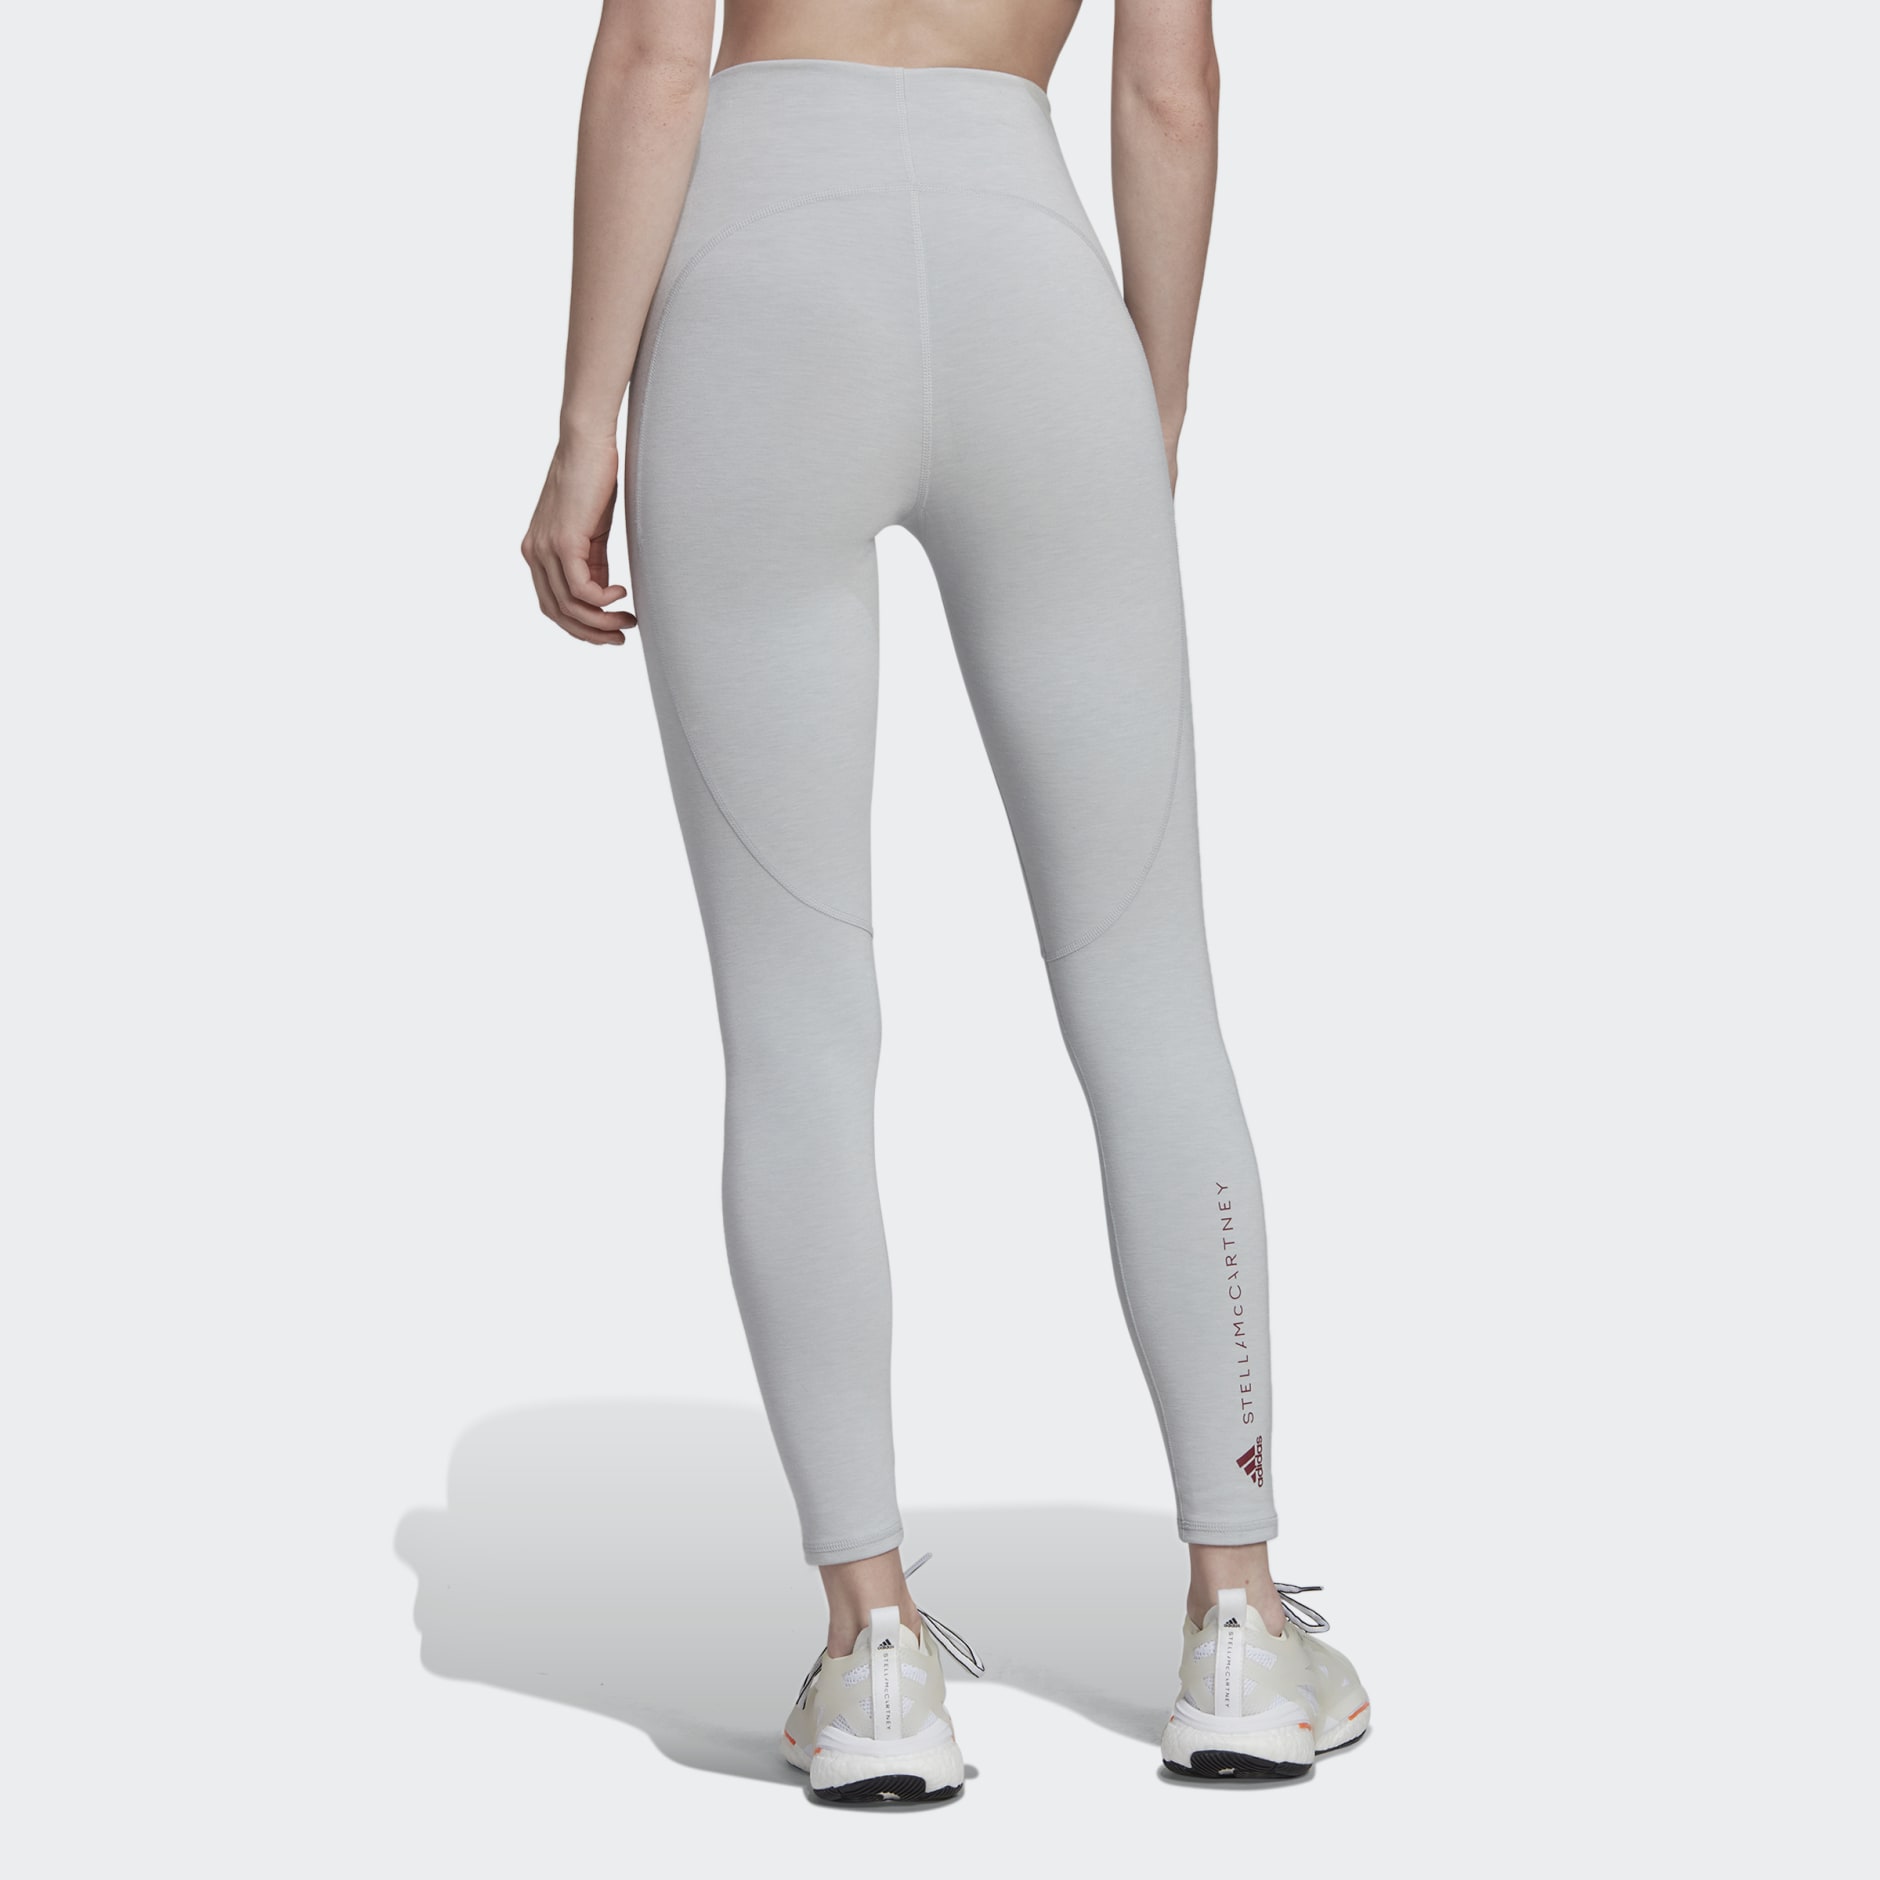 Clothing - adidas by Stella McCartney 7/8 Yoga Leggings - Grey | adidas ...